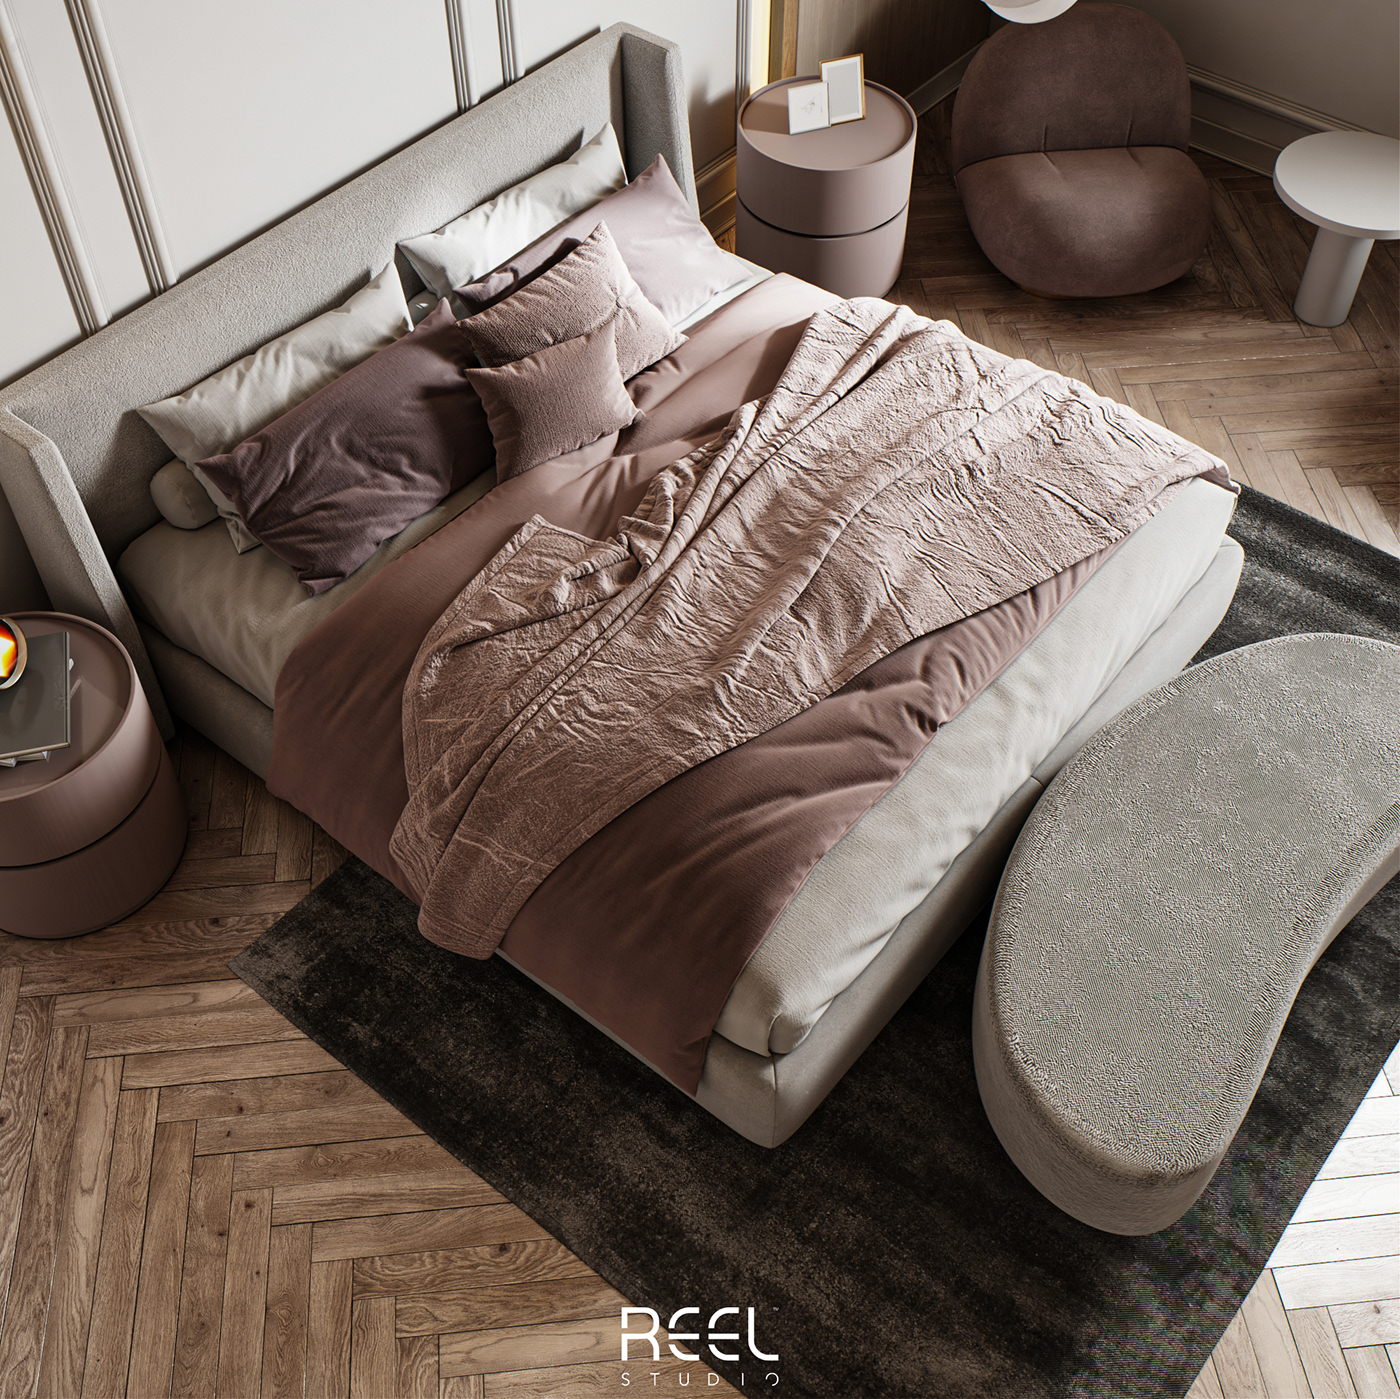 bedroom bedroom design CGI Girl bedroom GIRL BEDROOM DESIGN interior design  modern neoclassic cozy luxury